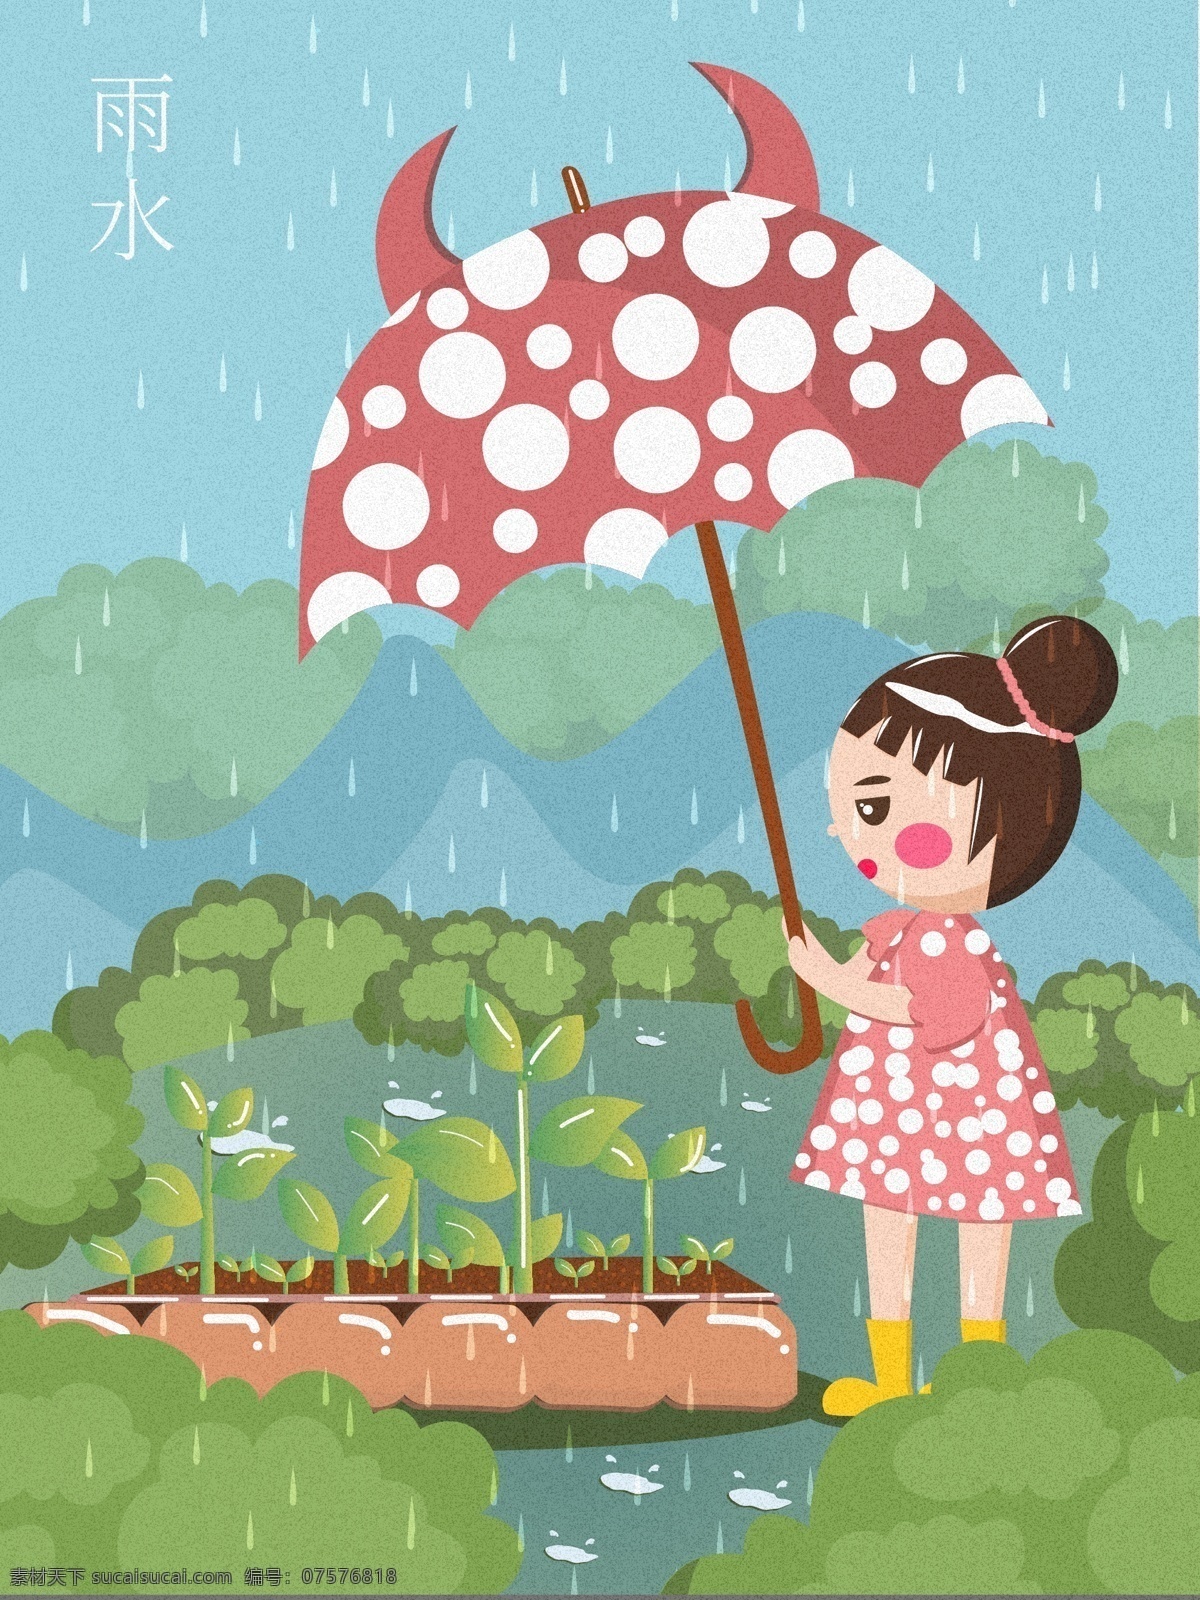 二十四节气 雨水 小女孩 保护 幼芽 植物 插画 春天 森林 树木 卡通 节气 雨伞 下雨 水鞋 女孩 玩耍 凉风 山林 清风 植树